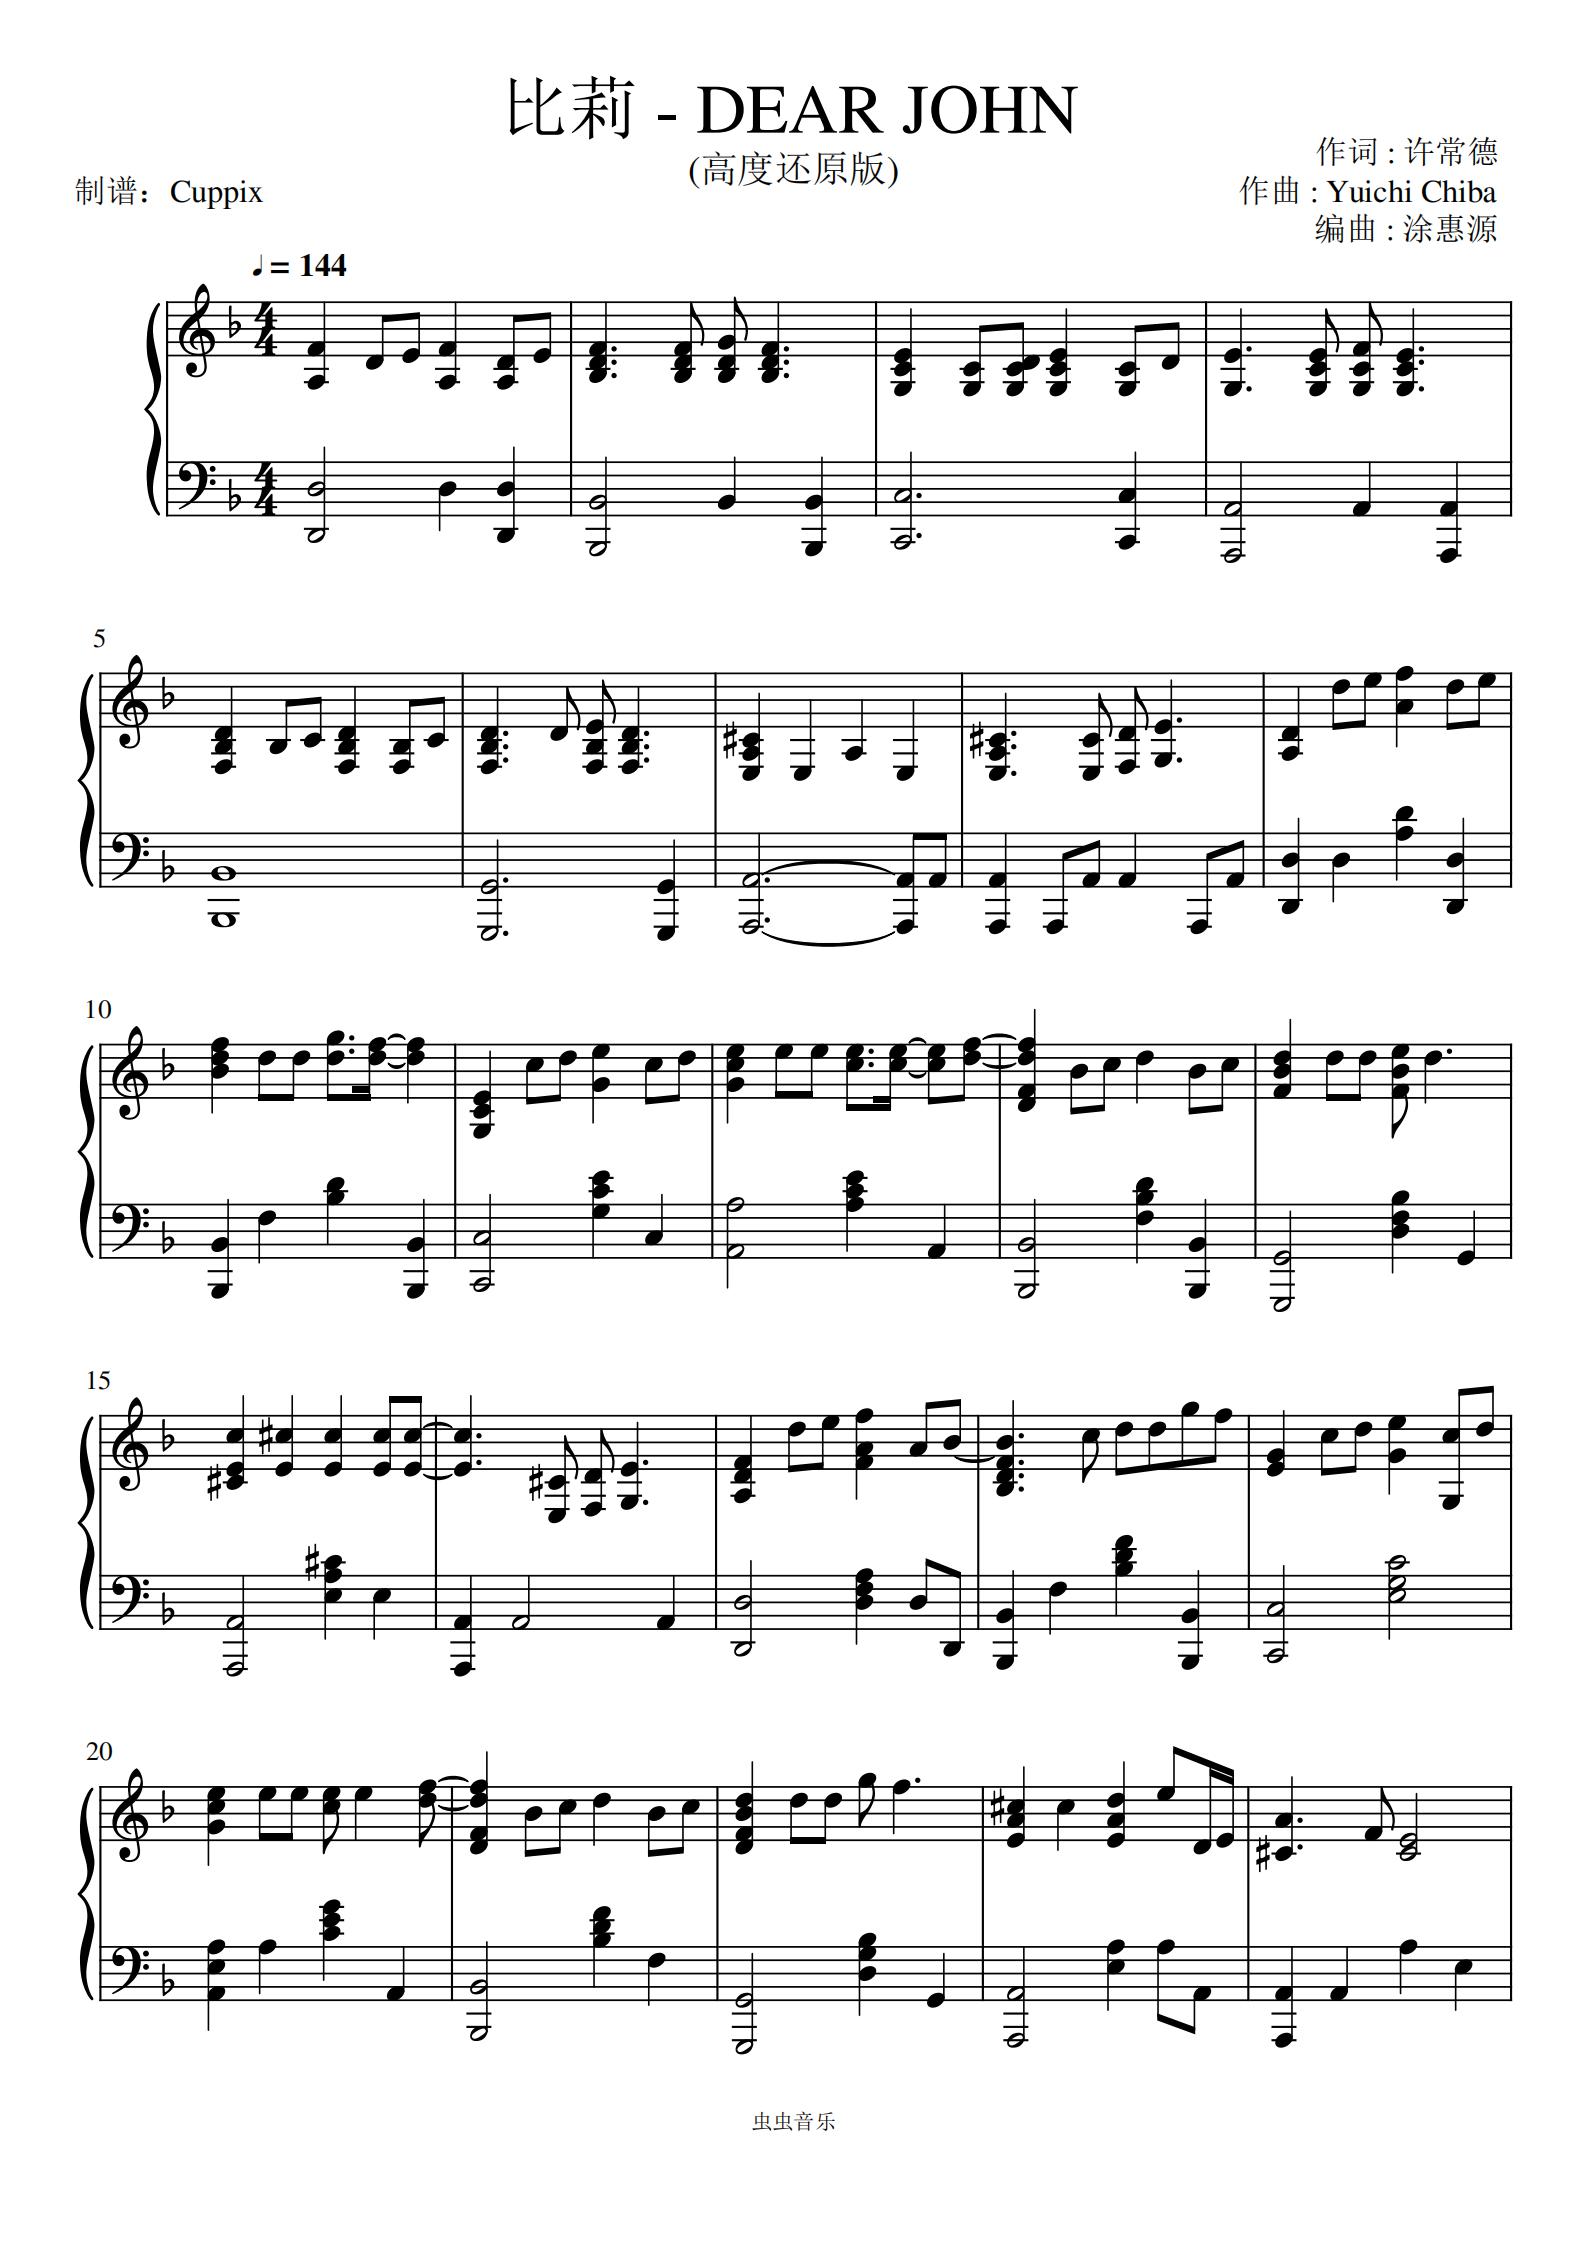 阴天-简单版-莫文蔚五线谱预览2-钢琴谱文件（五线谱、双手简谱、数字谱、Midi、PDF）免费下载